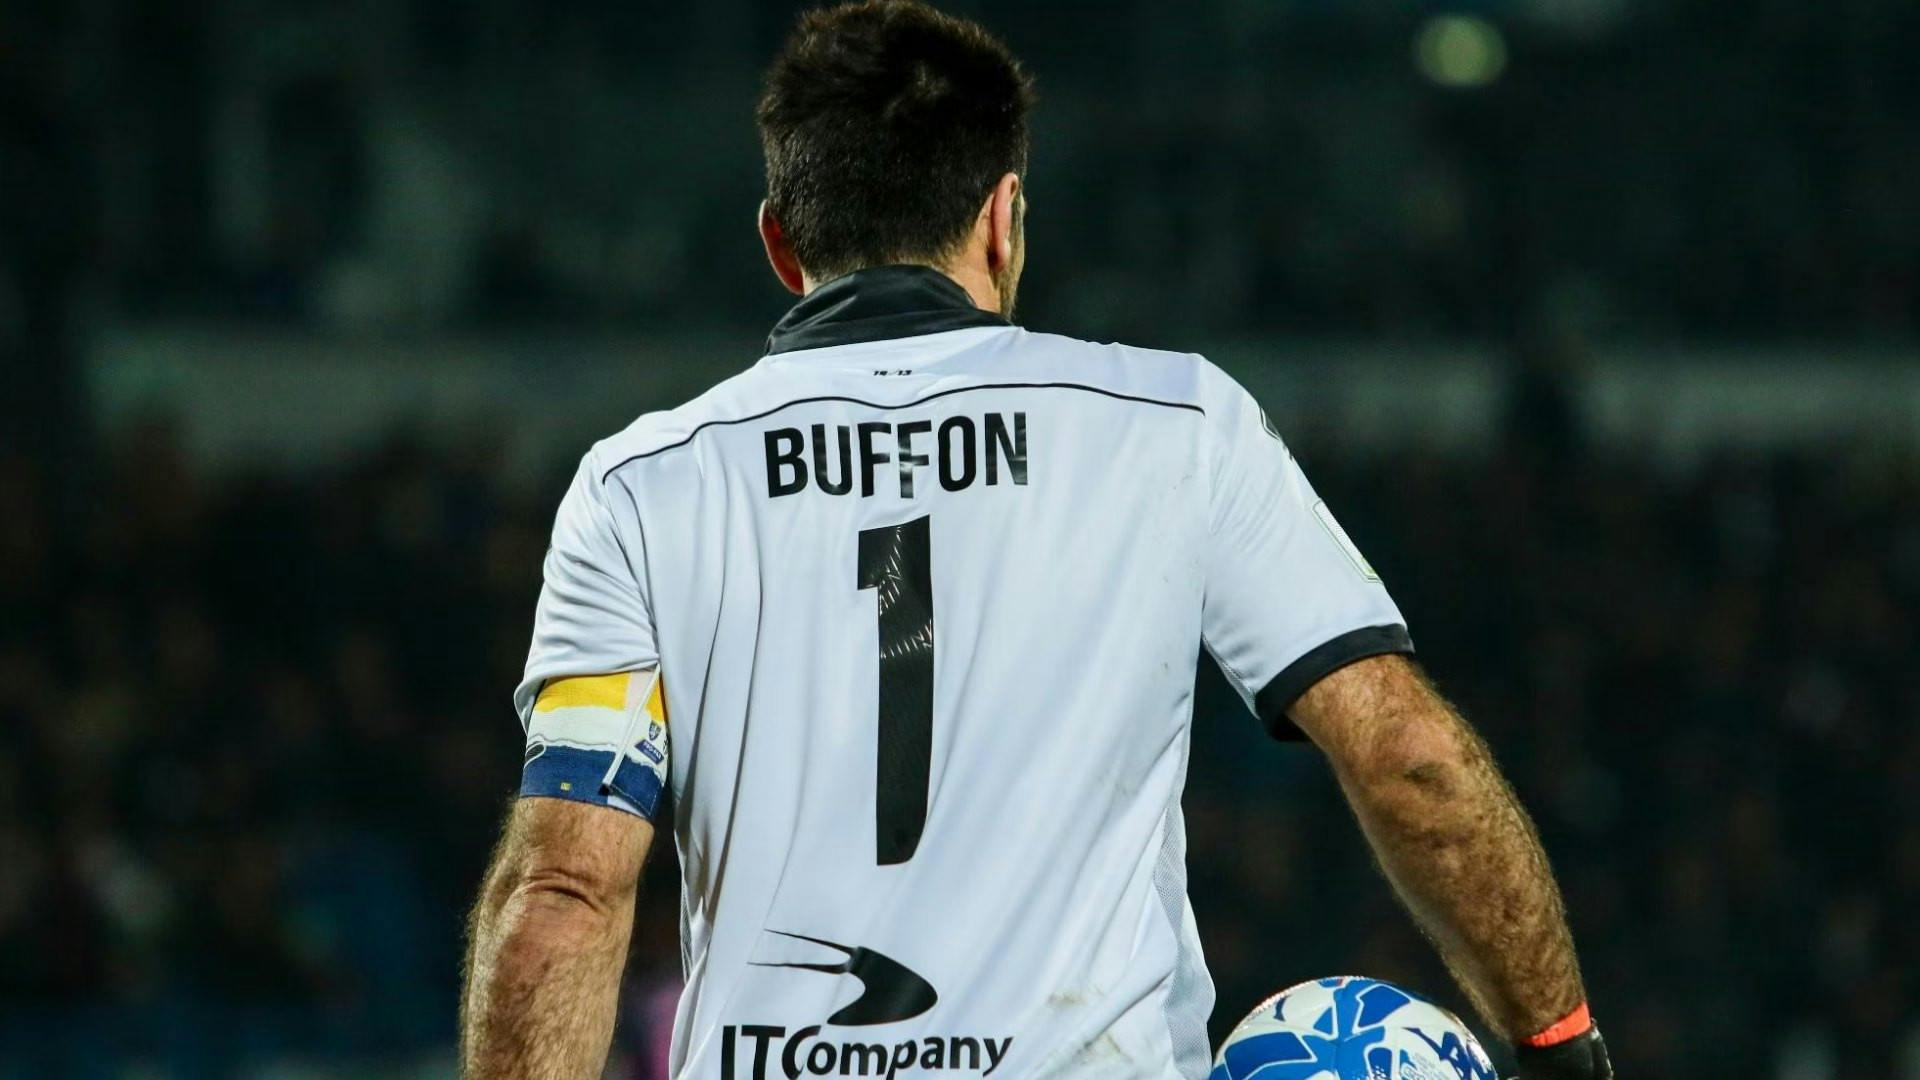 Buffon, addio al calcio. L'annuncio è da brividi (VIDEO)